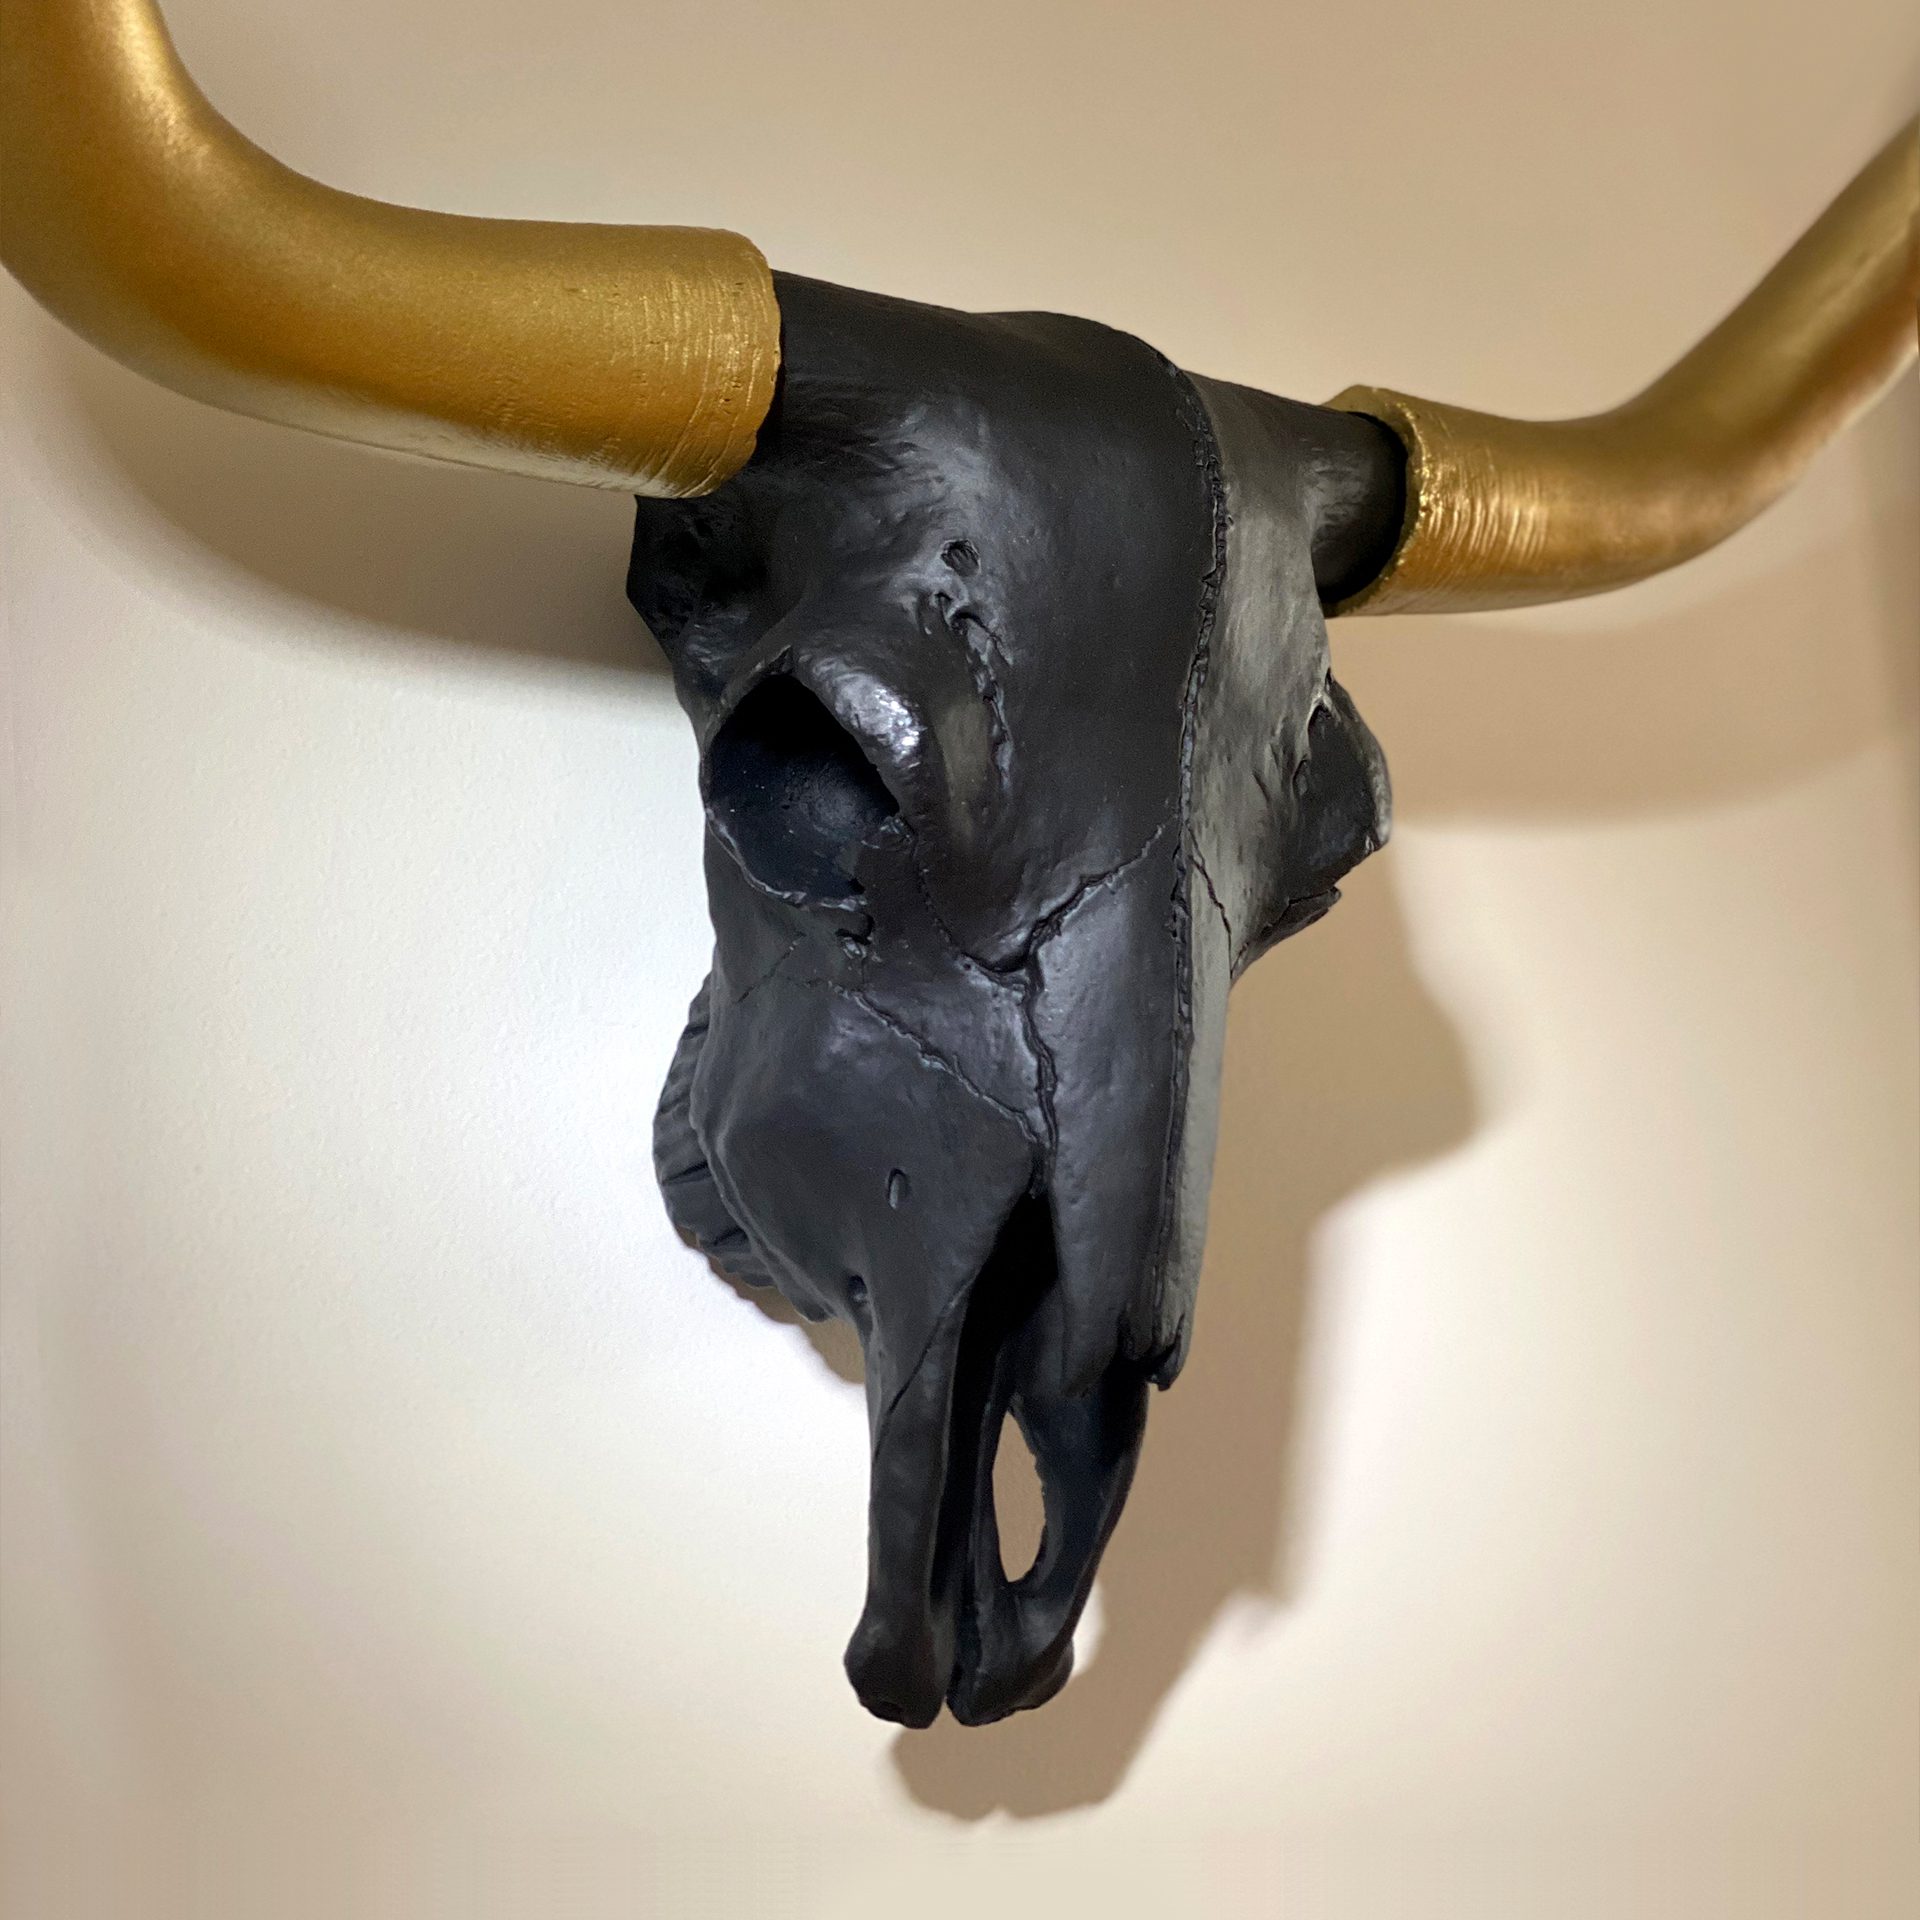 An Agency's bull skull